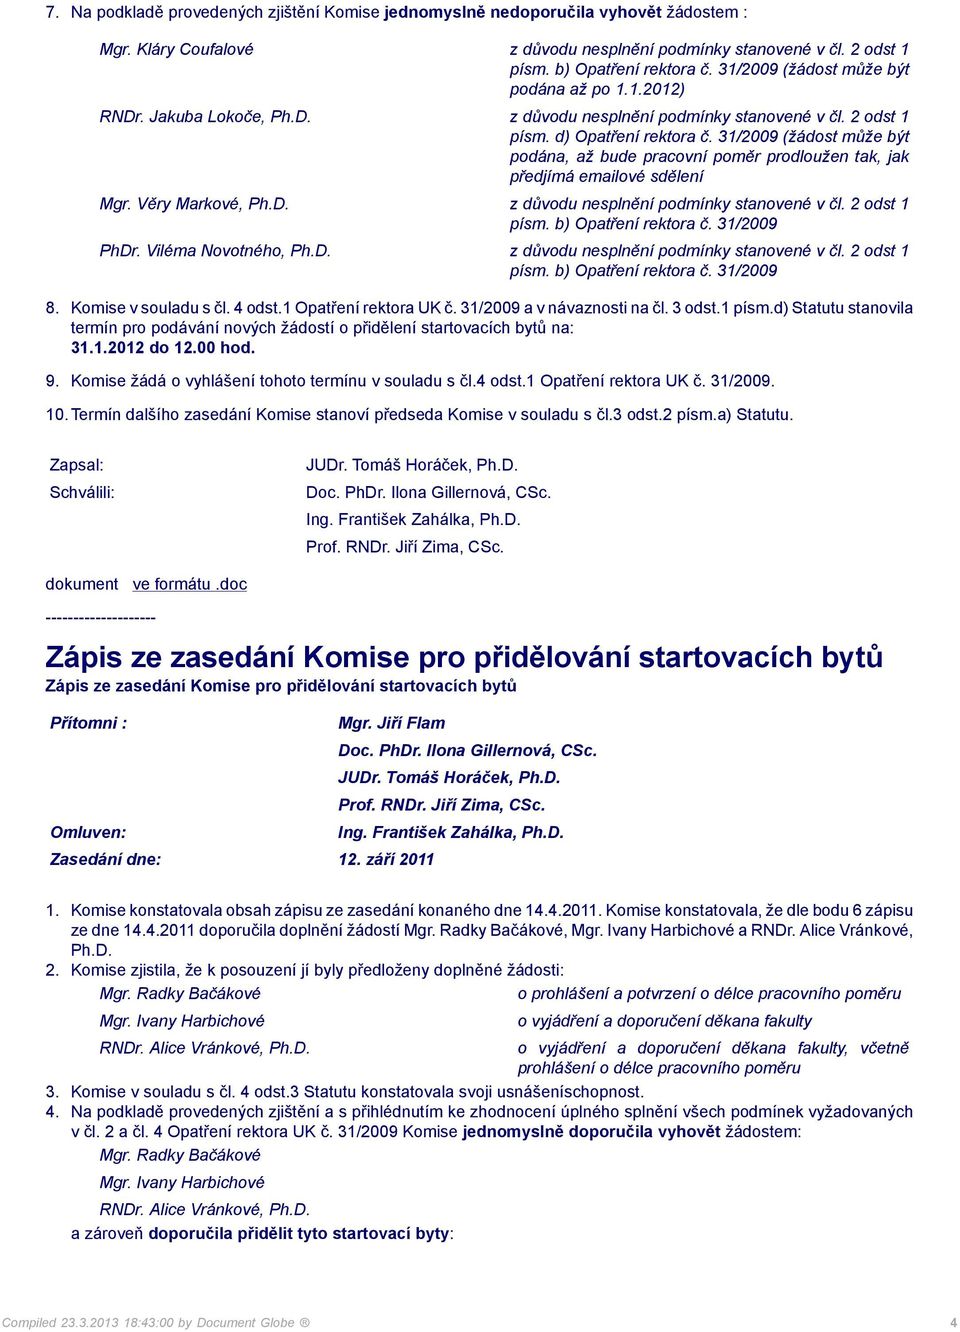 31/2009 (žádost může být podána, až bude pracovní poměr prodloužen tak, jak předjímá emailové sdělení Mgr. Věry Markové, Ph.D. z důvodu nesplnění podmínky stanovené v čl. 2 odst 1 písm.